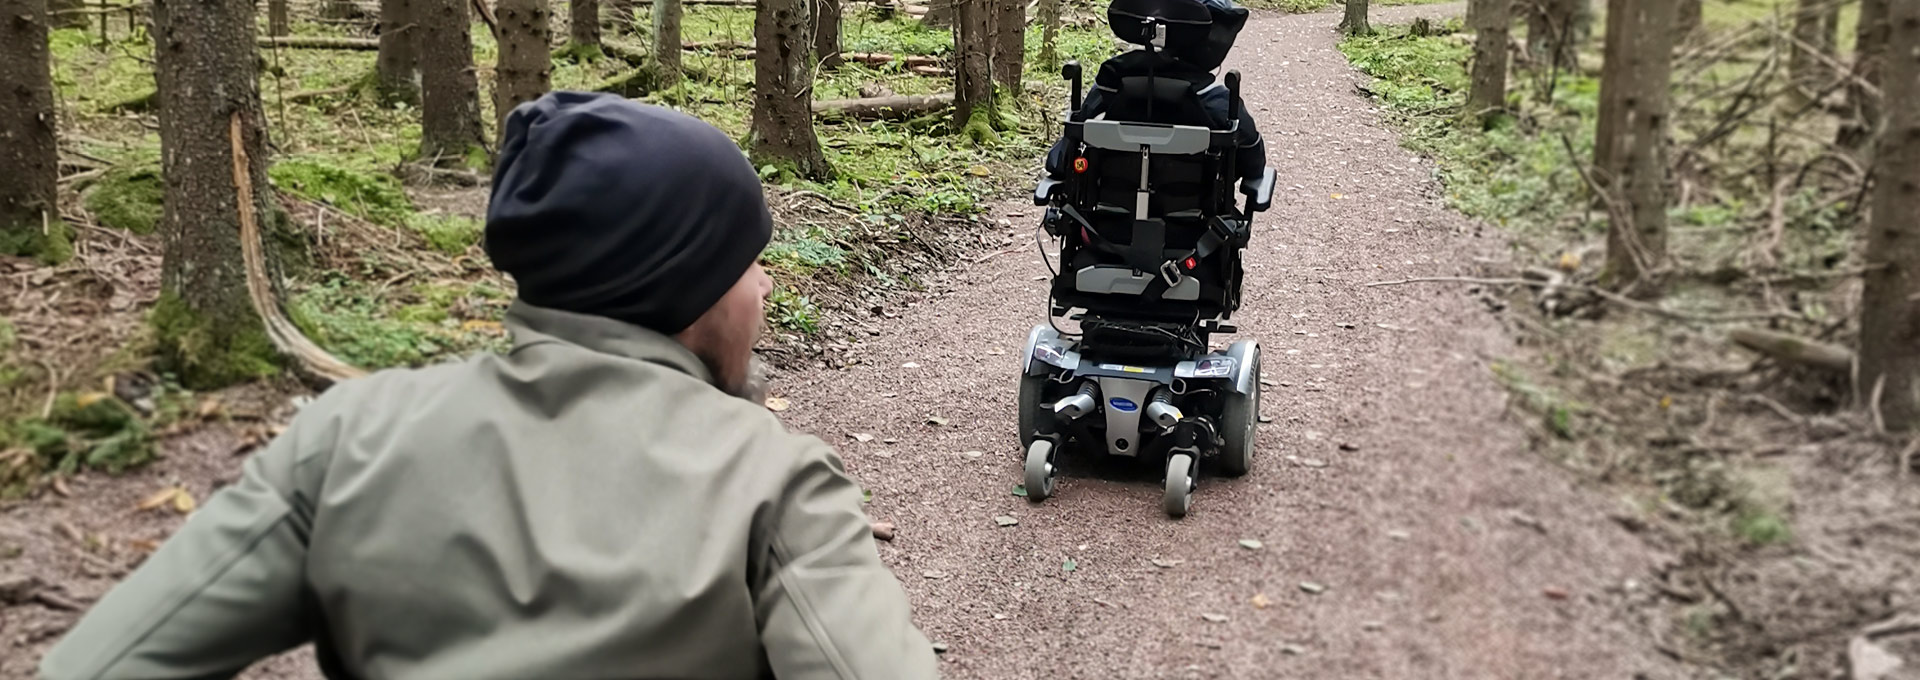 Kaksi pyörätuolin avulla liikkuvaa henkilöä kulkee hiekkatiellä metsässä.